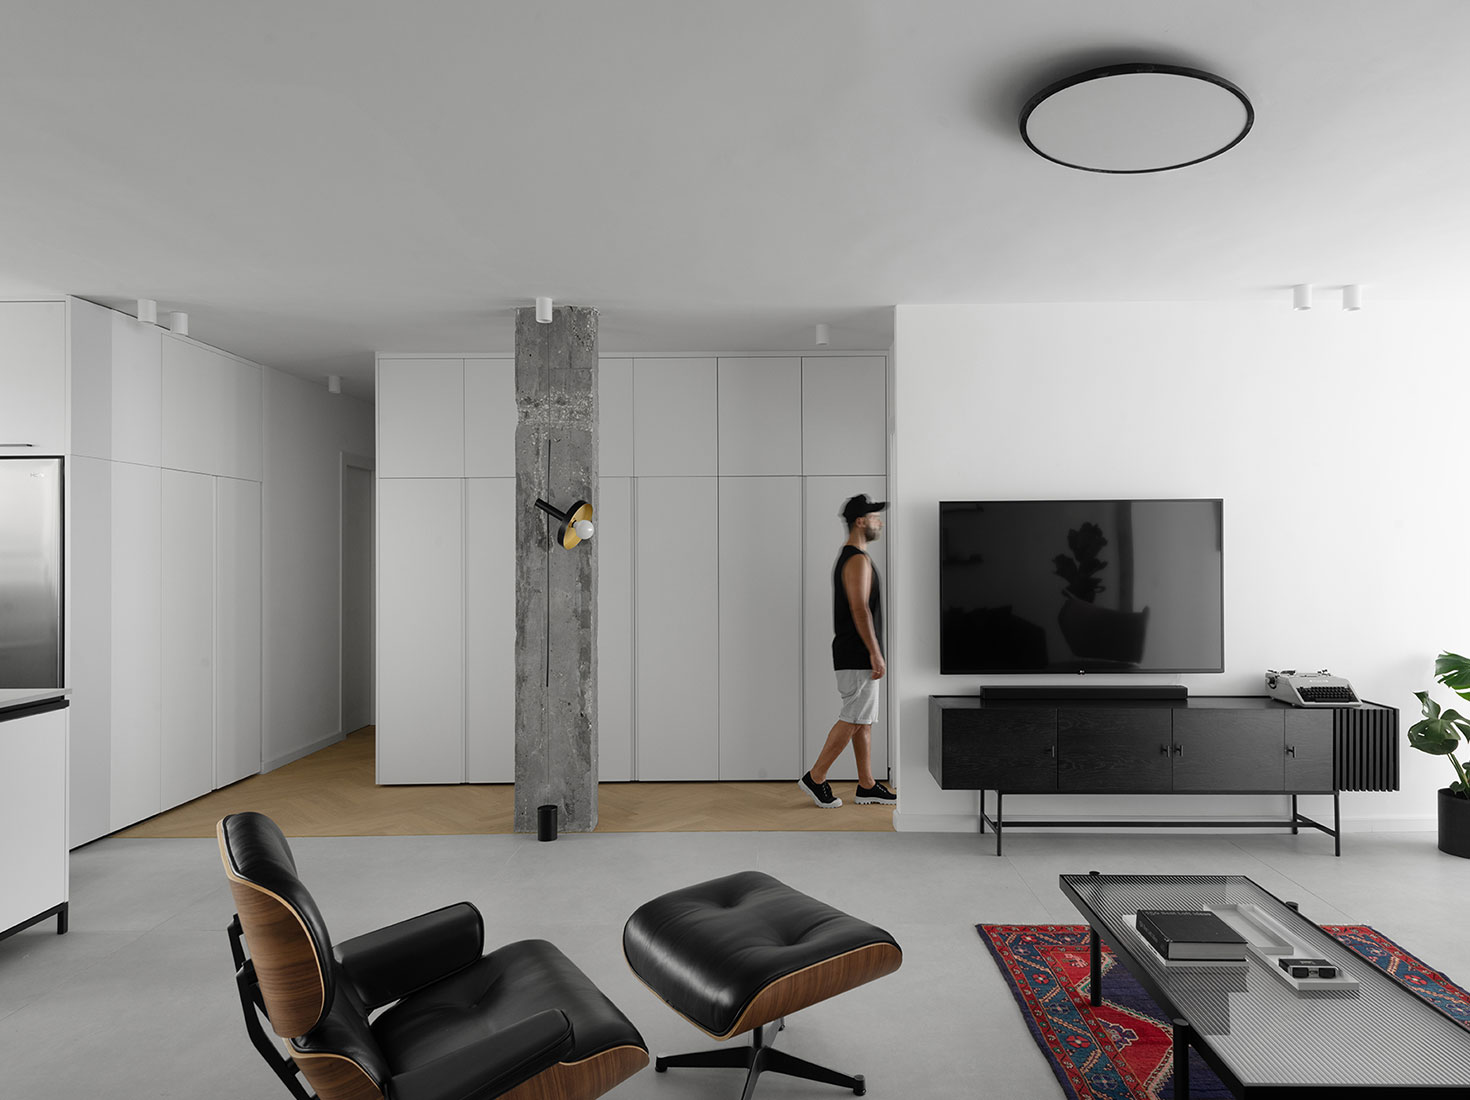 Studio ETN,130㎡,以色列,公寓設計案例,白色+原木色,北歐風格,國外公寓設計,公寓設計方案